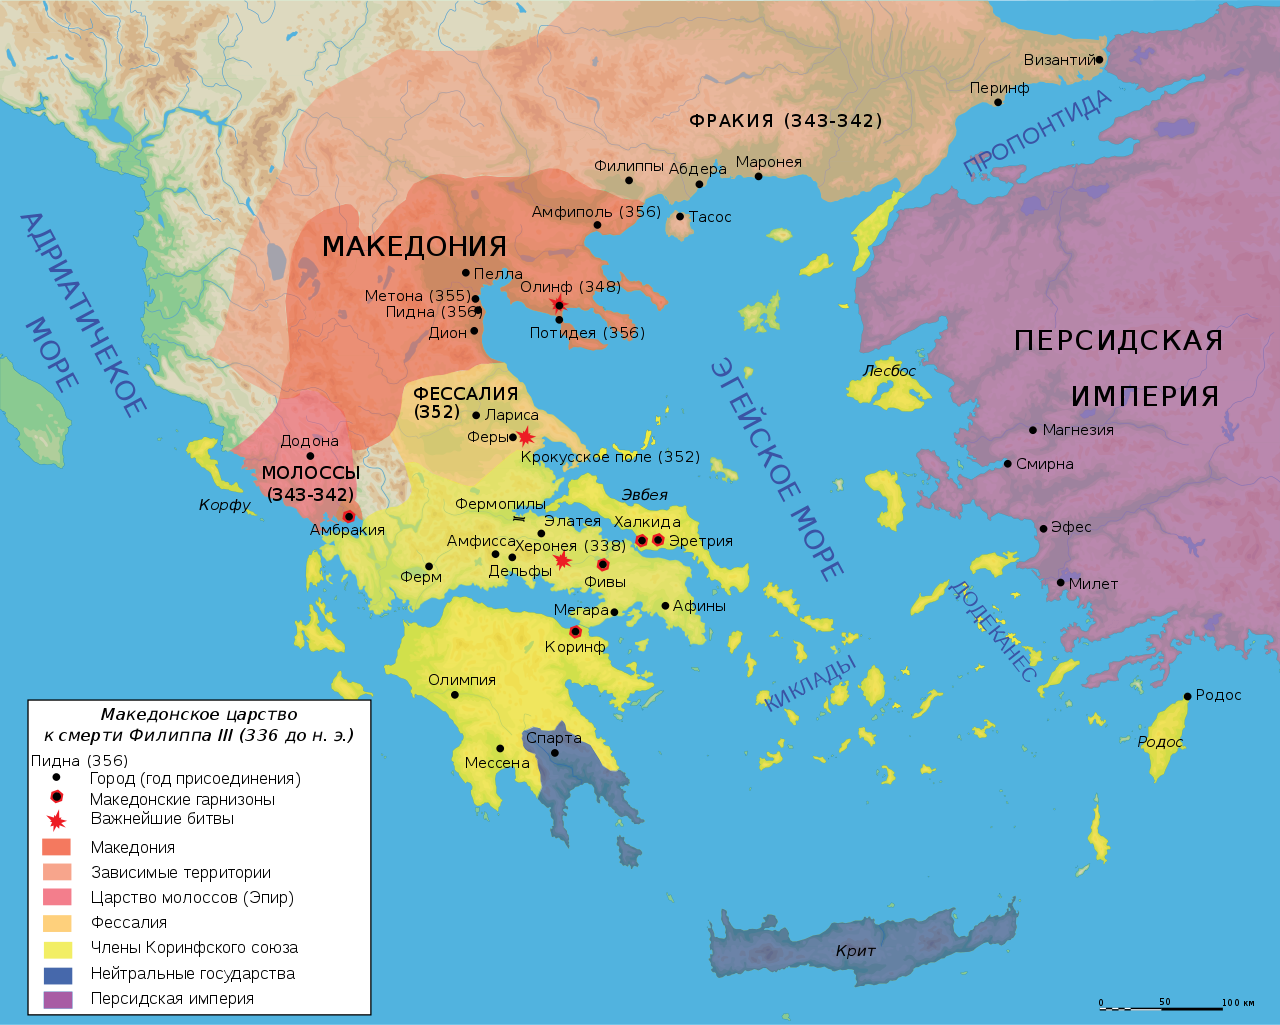 Македонское царство 336 до н.э.